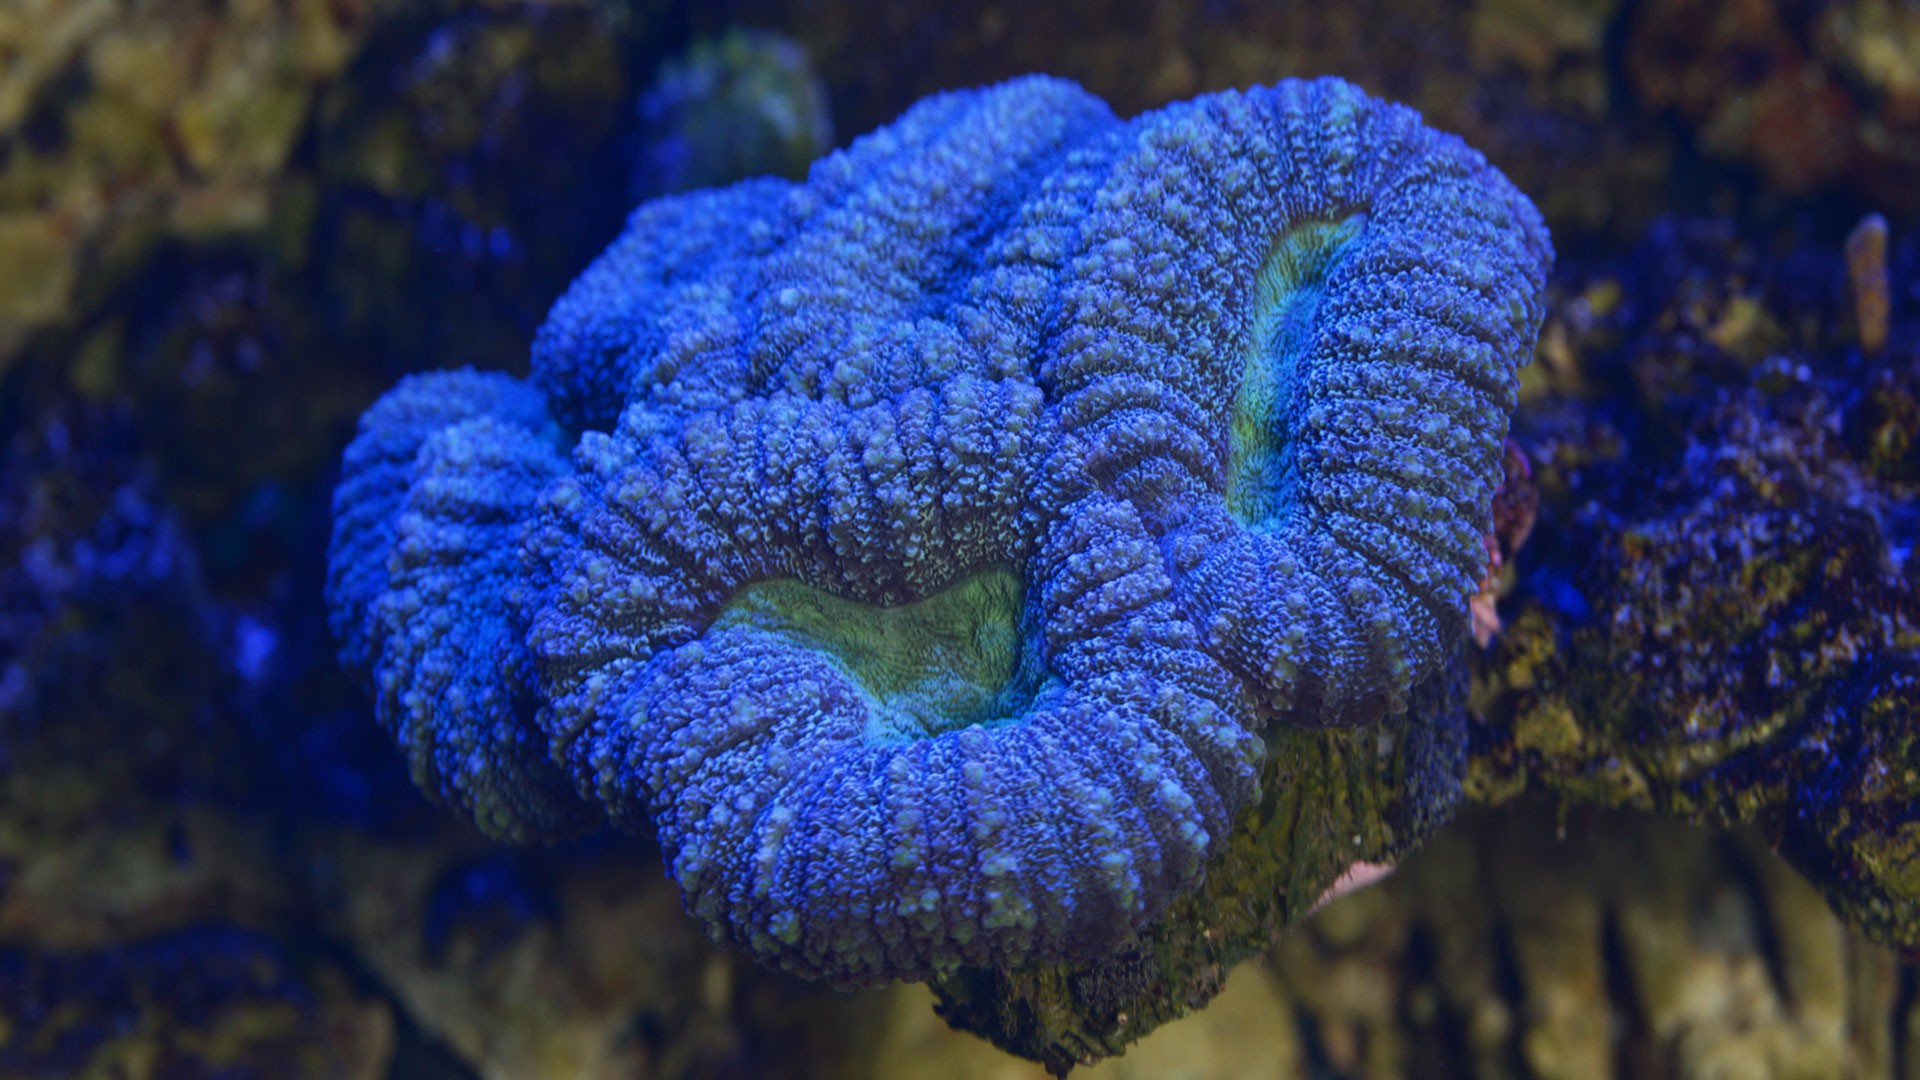 Open Brain Coral